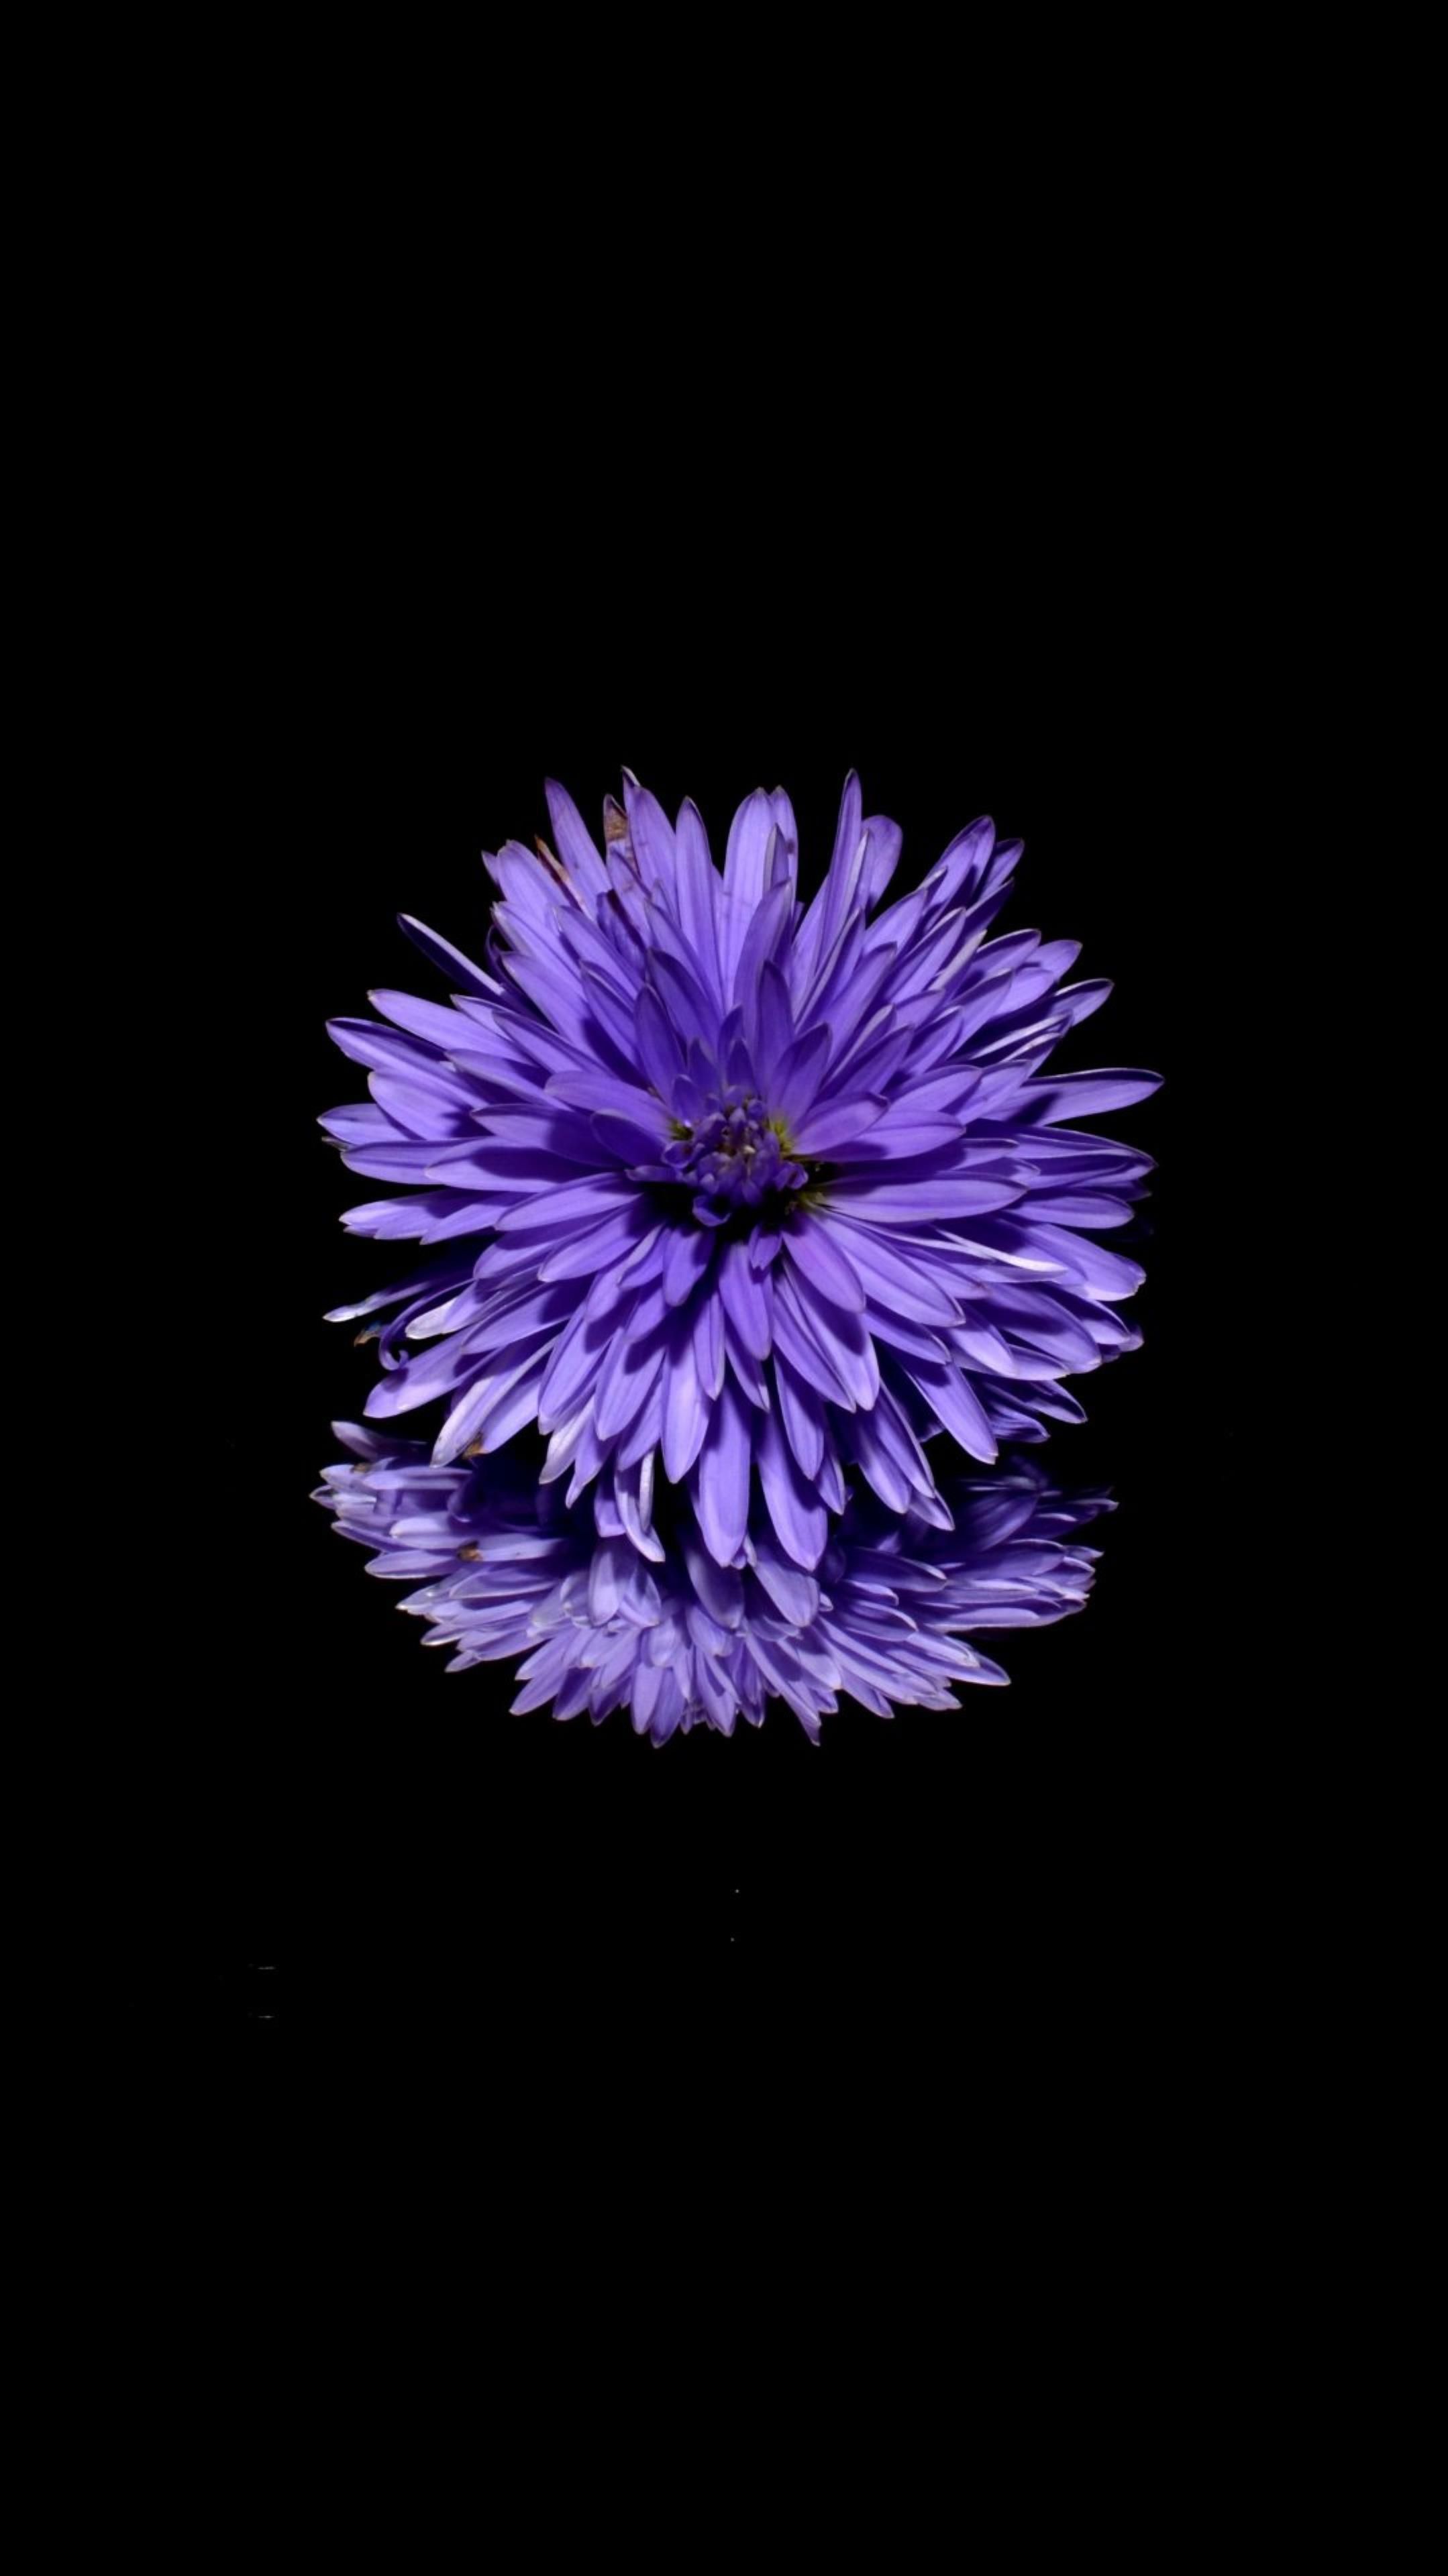 AMOLED Flower Wallpaper. Flower iphone wallpaper, Purple flowers wallpaper, iPhone wallpaper violet